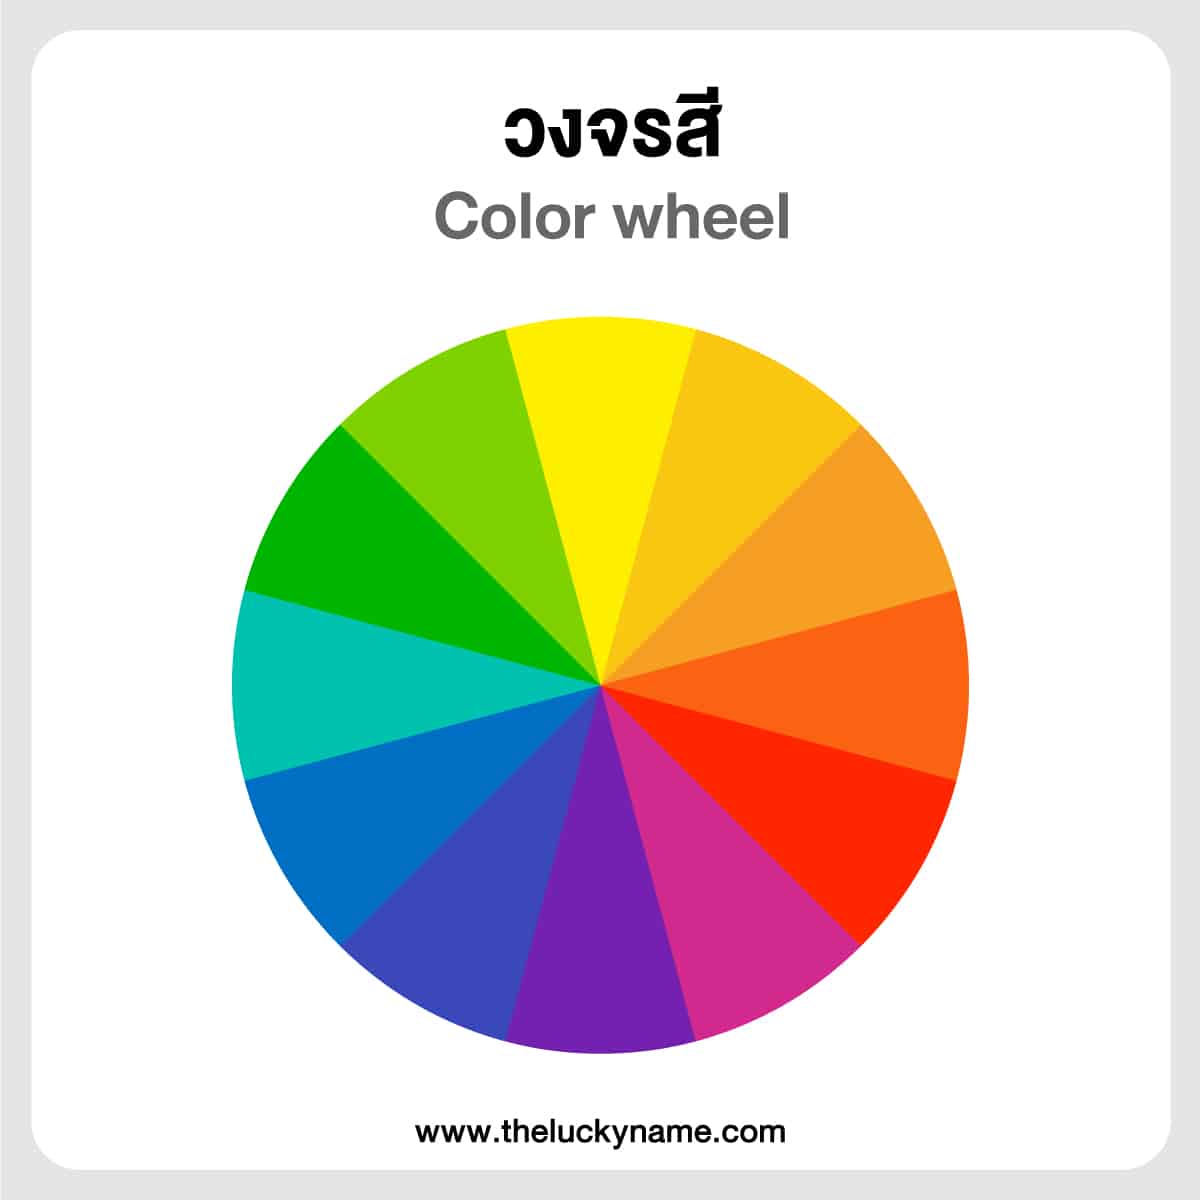 วงจรสี วงล้อสี color wheel